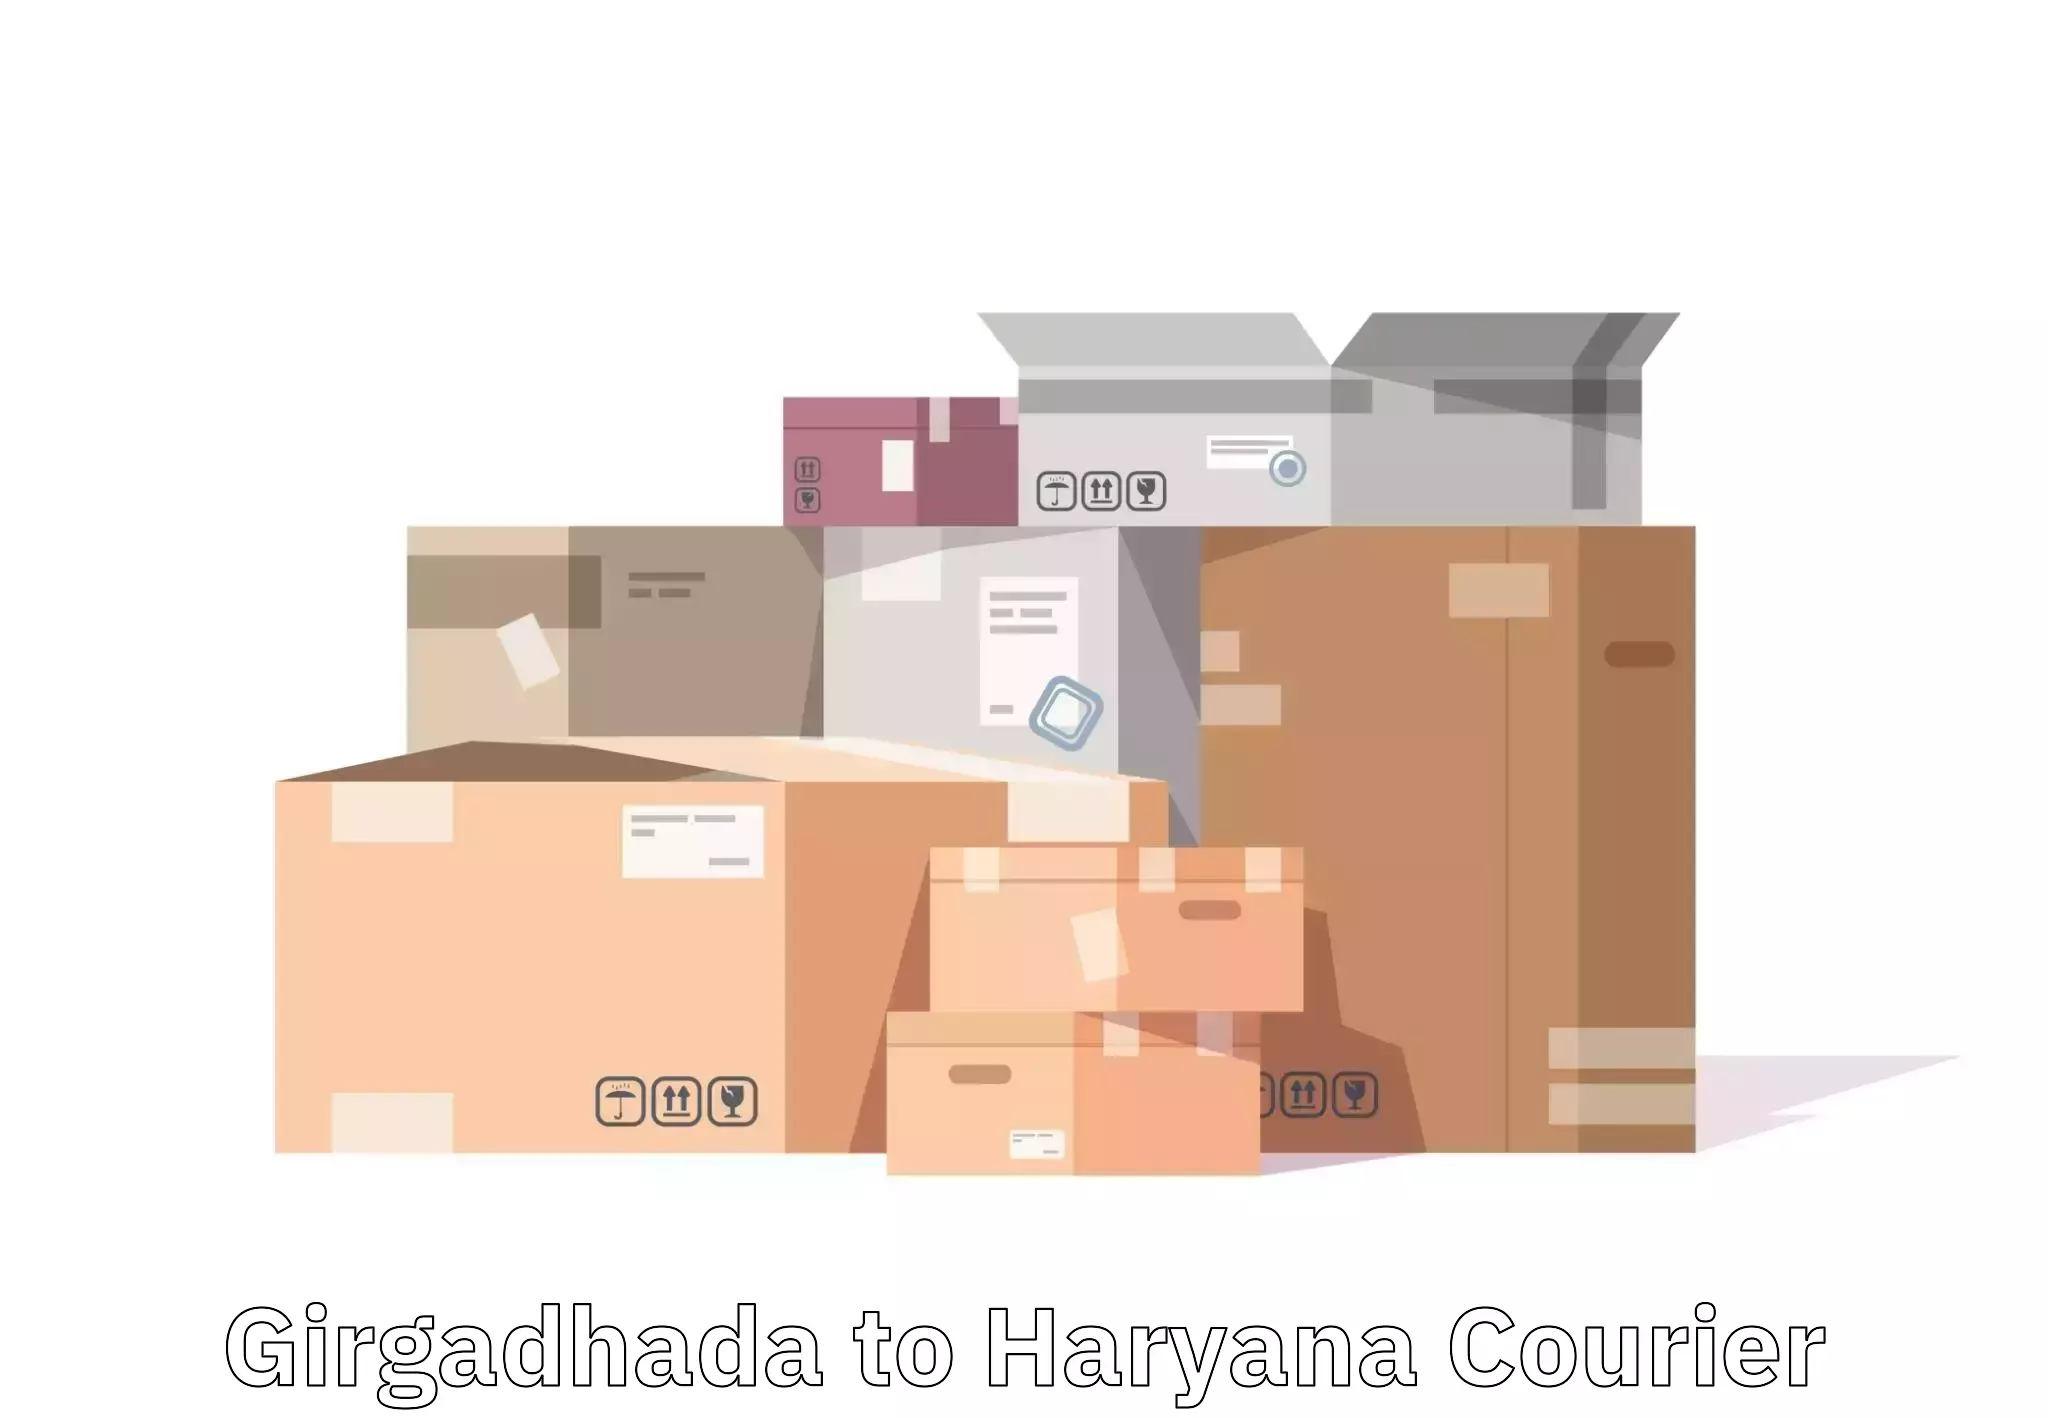 Baggage delivery technology Girgadhada to NCR Haryana